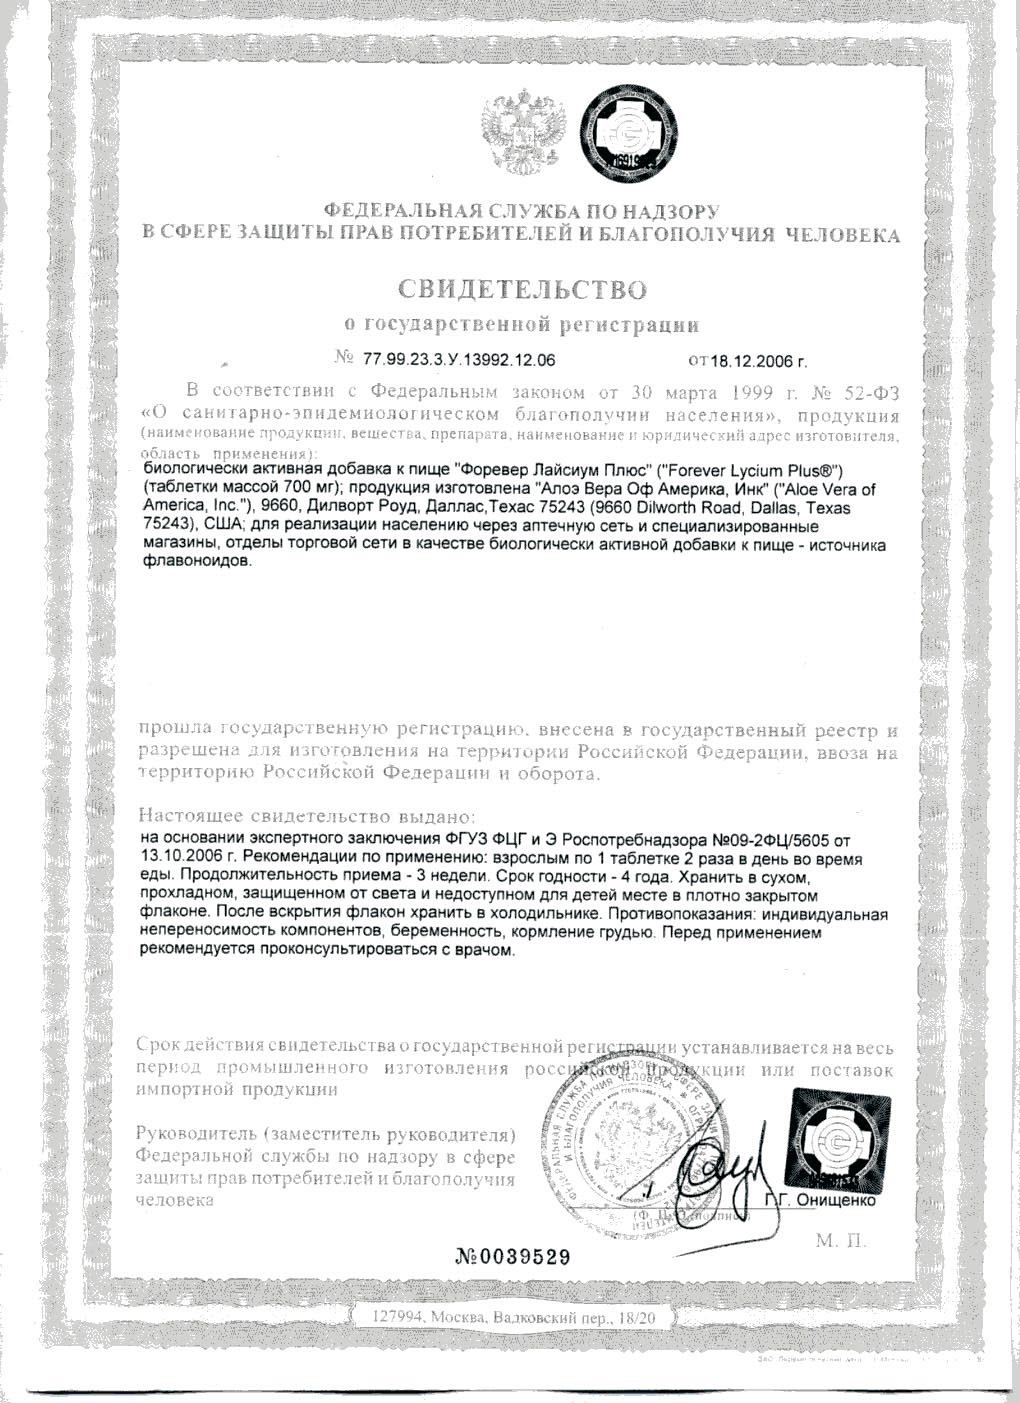 Сертификат Форевер Лайсиум Плюс